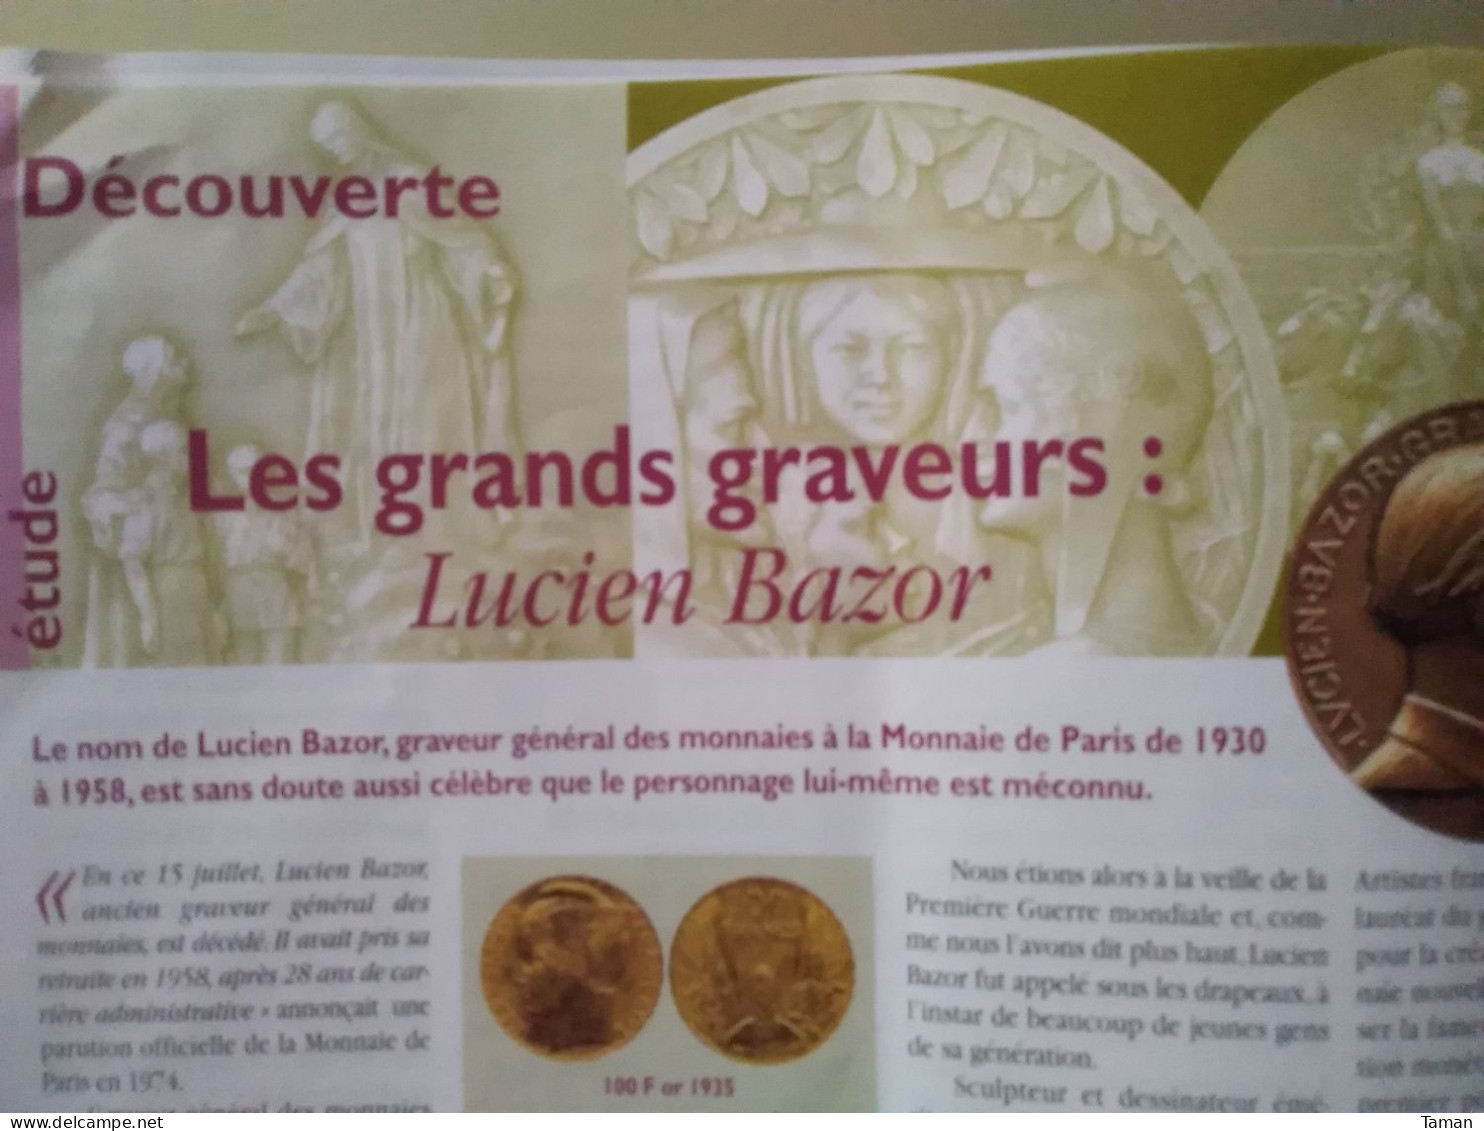 Numismatique & change - Le médailler du Vatican - Rome Gaule - Mérovingiens - Lucien Bazor